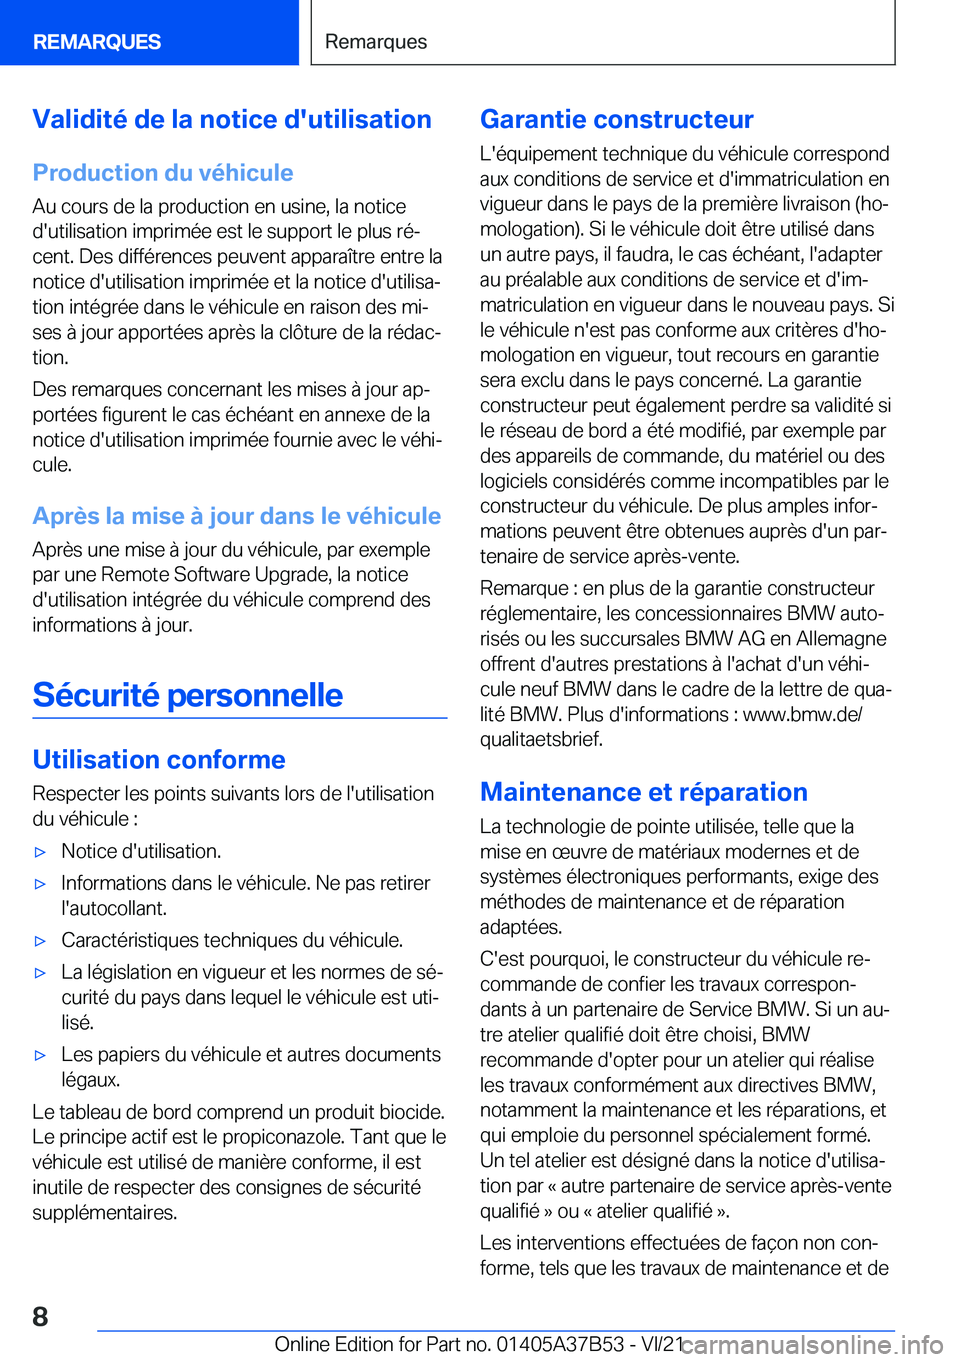 BMW M8 2022  Notices Demploi (in French) �V�a�l�i�d�i�t�é��d�e��l�a��n�o�t�i�c�e��d�'�u�t�i�l�i�s�a�t�i�o�n
�P�r�o�d�u�c�t�i�o�n��d�u��v�é�h�i�c�u�l�e
�A�u��c�o�u�r�s��d�e��l�a��p�r�o�d�u�c�t�i�o�n��e�n��u�s�i�n�e�,��l�a�